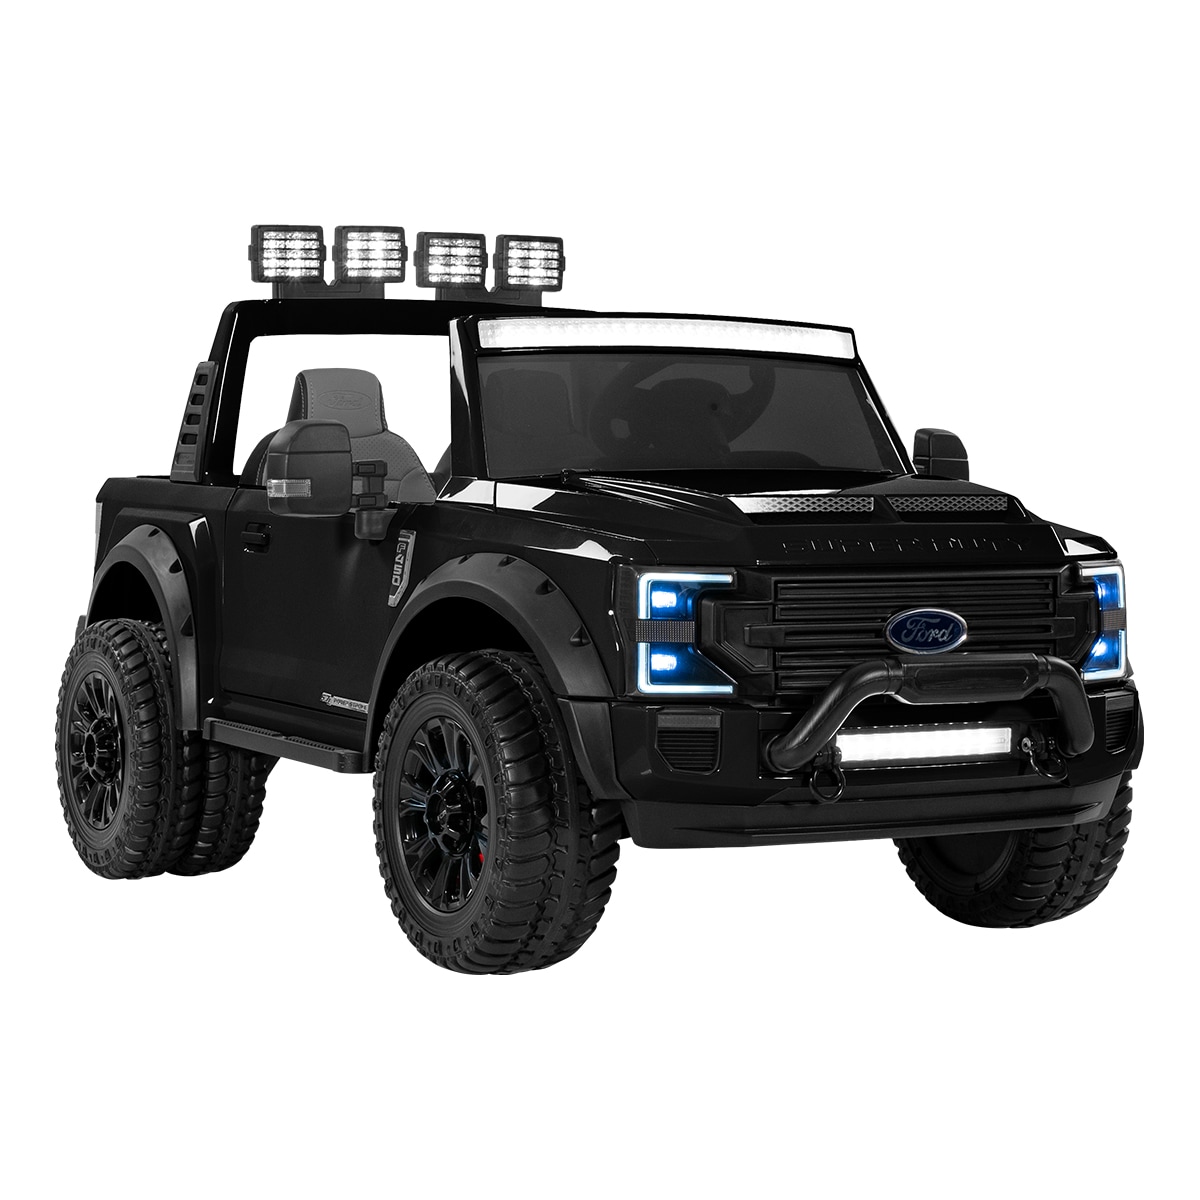 Sähköauto Ford Ranger Super Duty 4x4